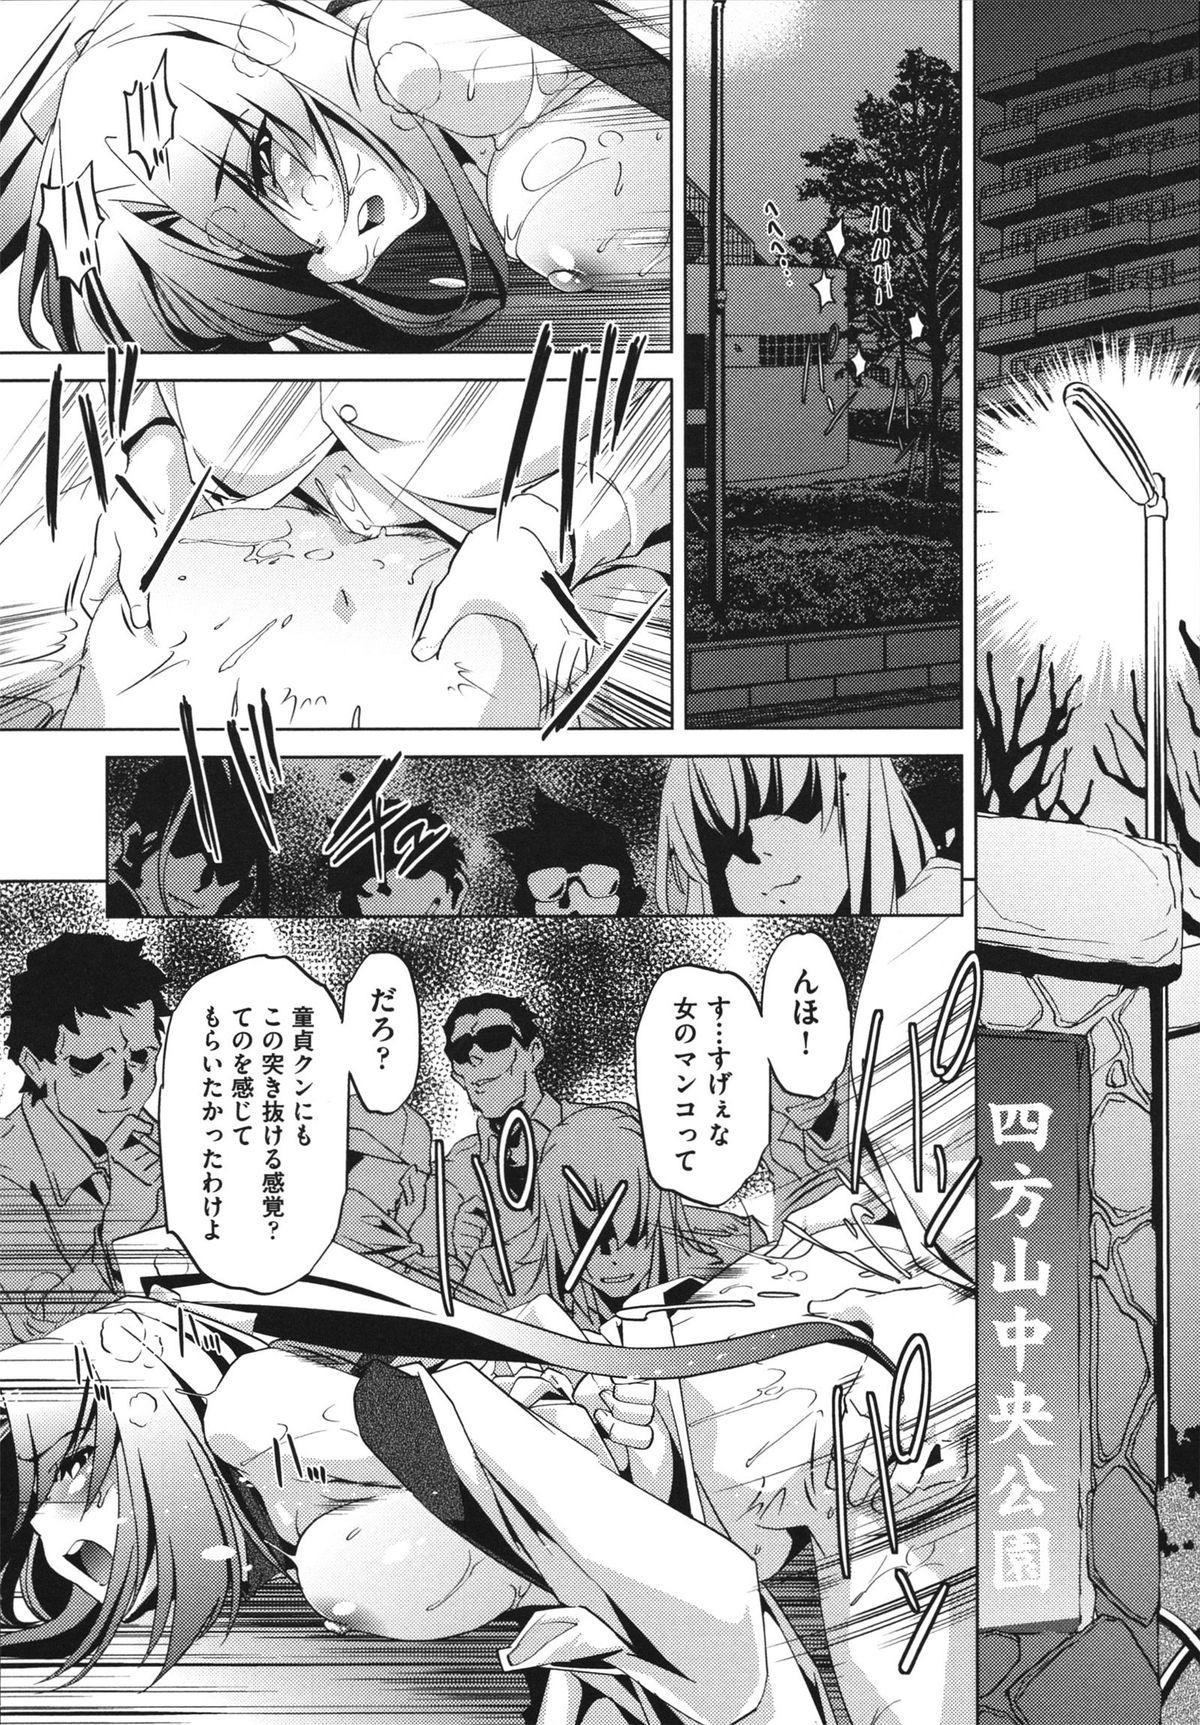 [Ootori Ryuuji] Shokushu wa Yawarakana Chibusa ni Makitsuki Onna-tachi no Ana wo Kakimidasu - Feeler coils around a soft breast and violates women's hole. 15